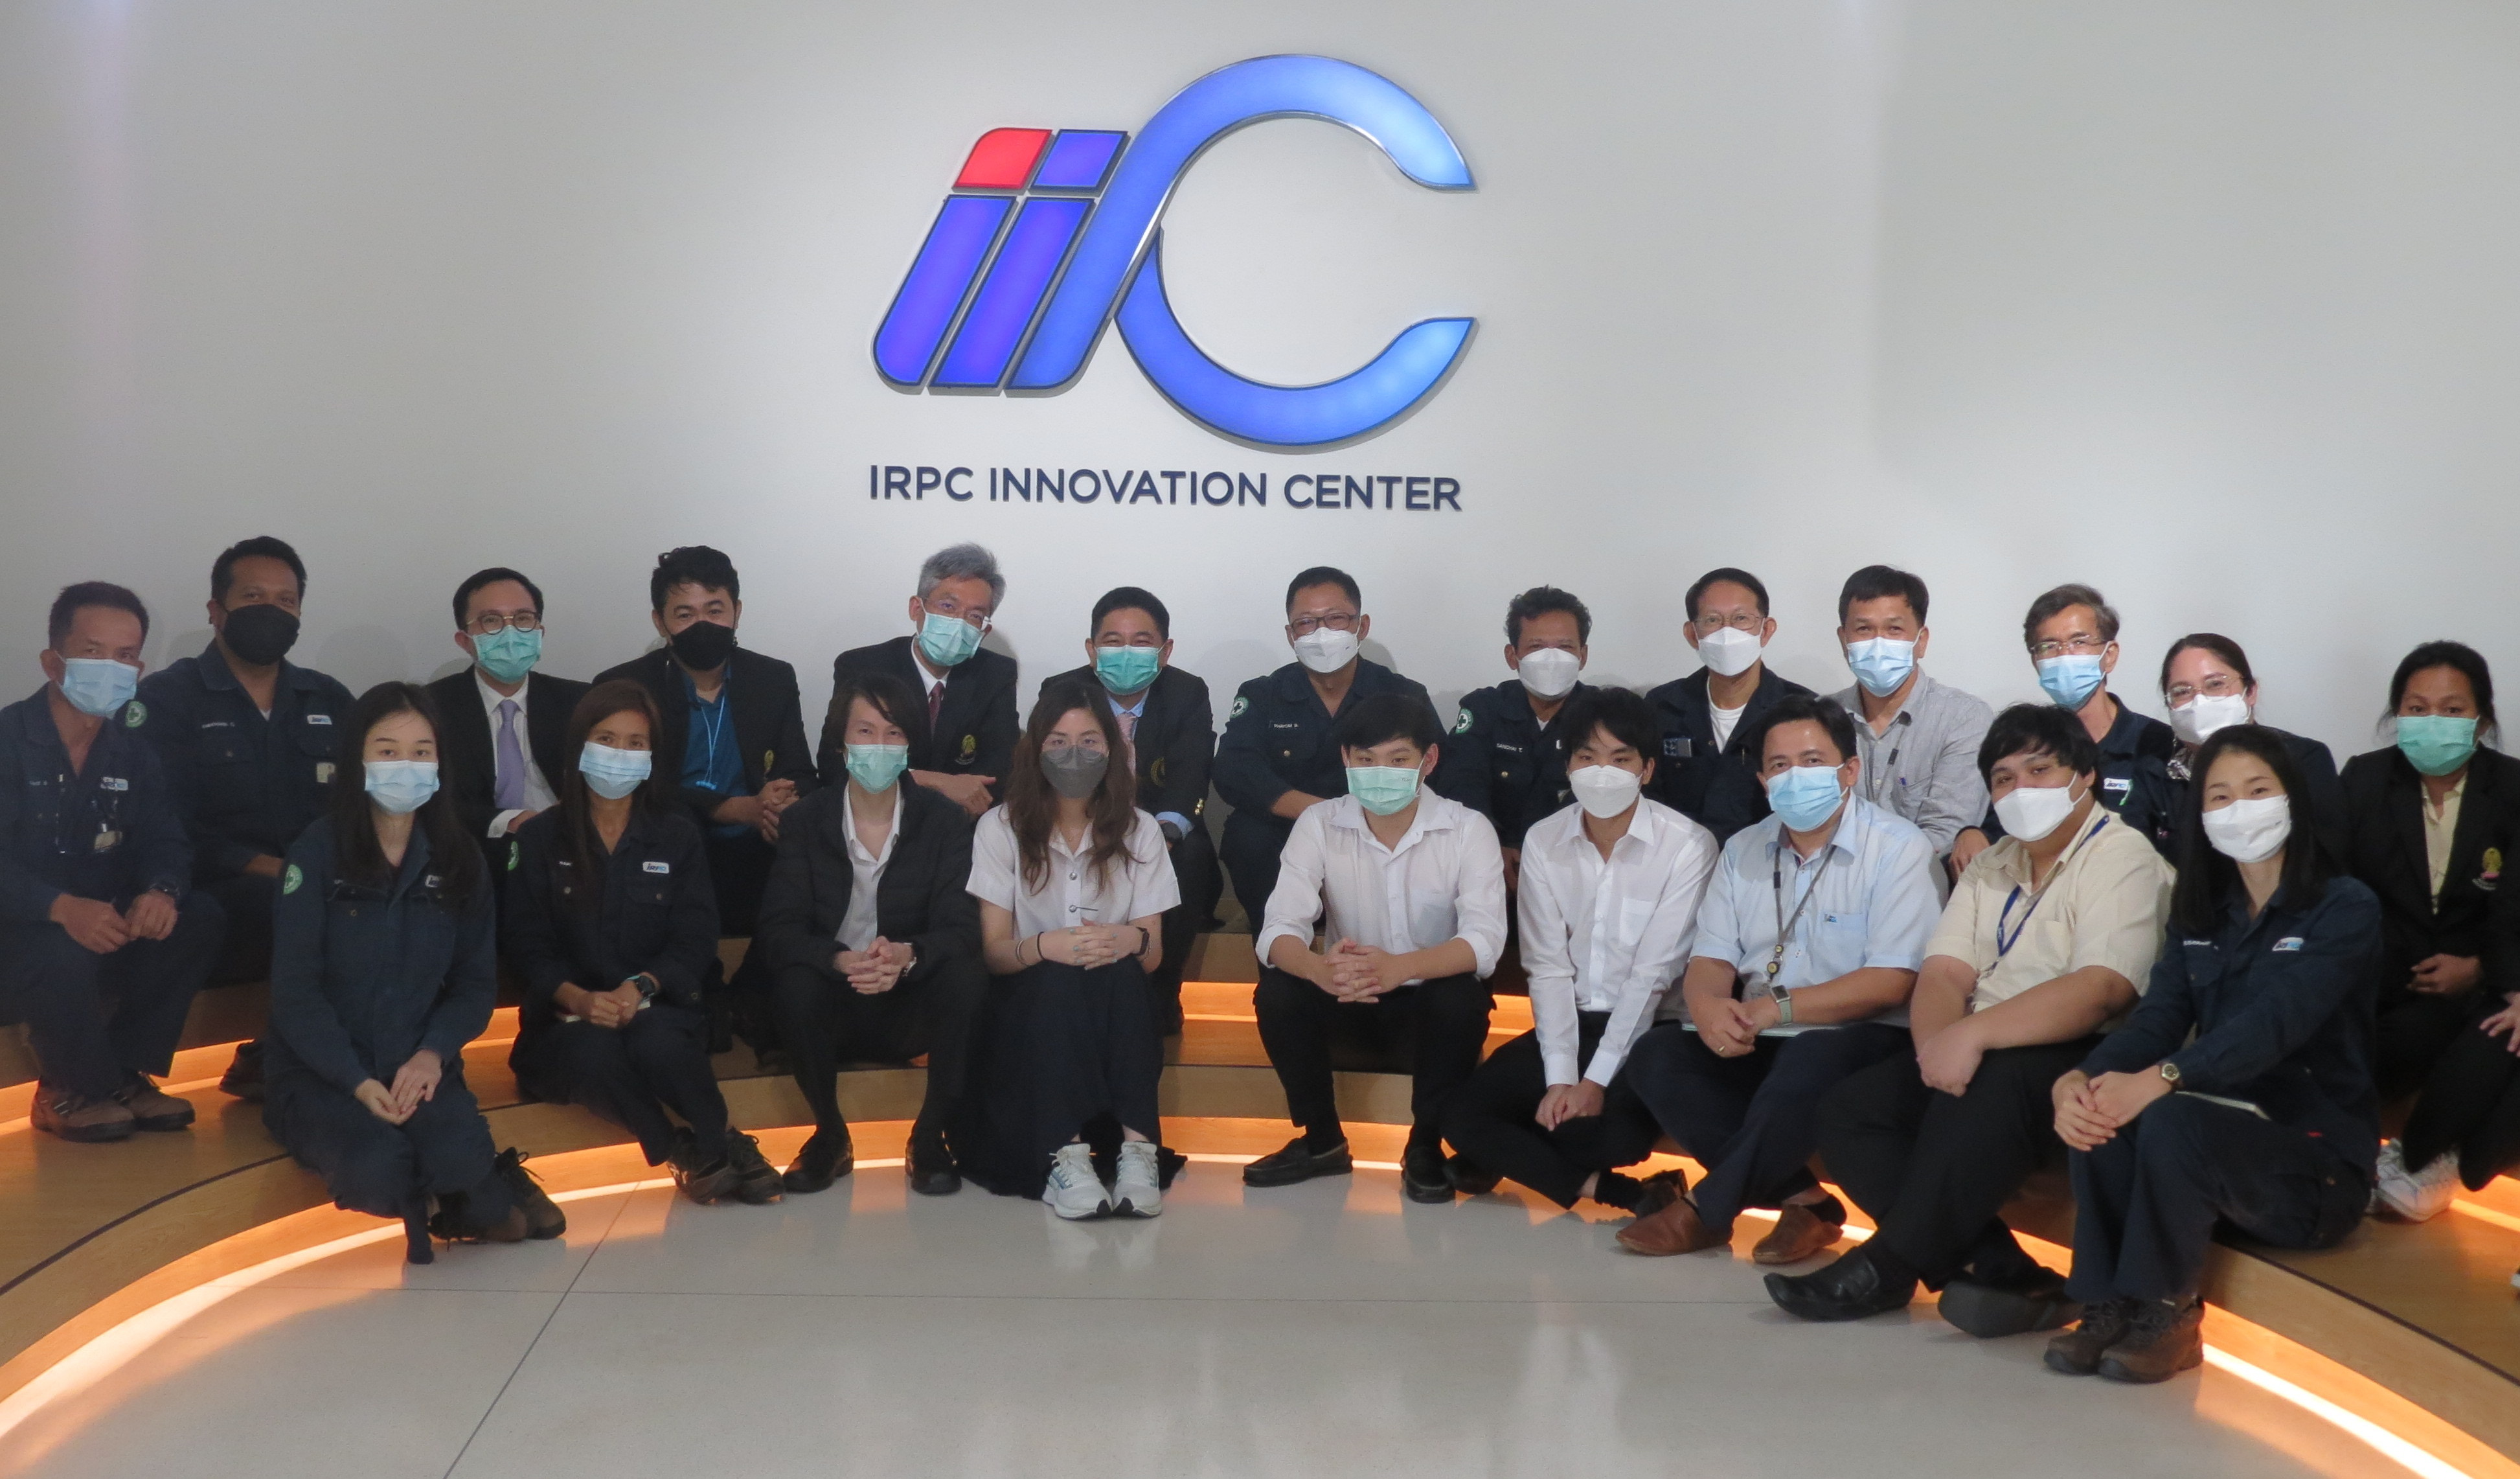 ศูนย์นวัตกรรม IRPC ให้การต้อนรับคณะแพทยศาสตร์ จุฬาลงกรณ์มหาวิทยาลัย เพื่อศึกษาดูงานด้านการวิจัยและพัฒนานวัตกรรม